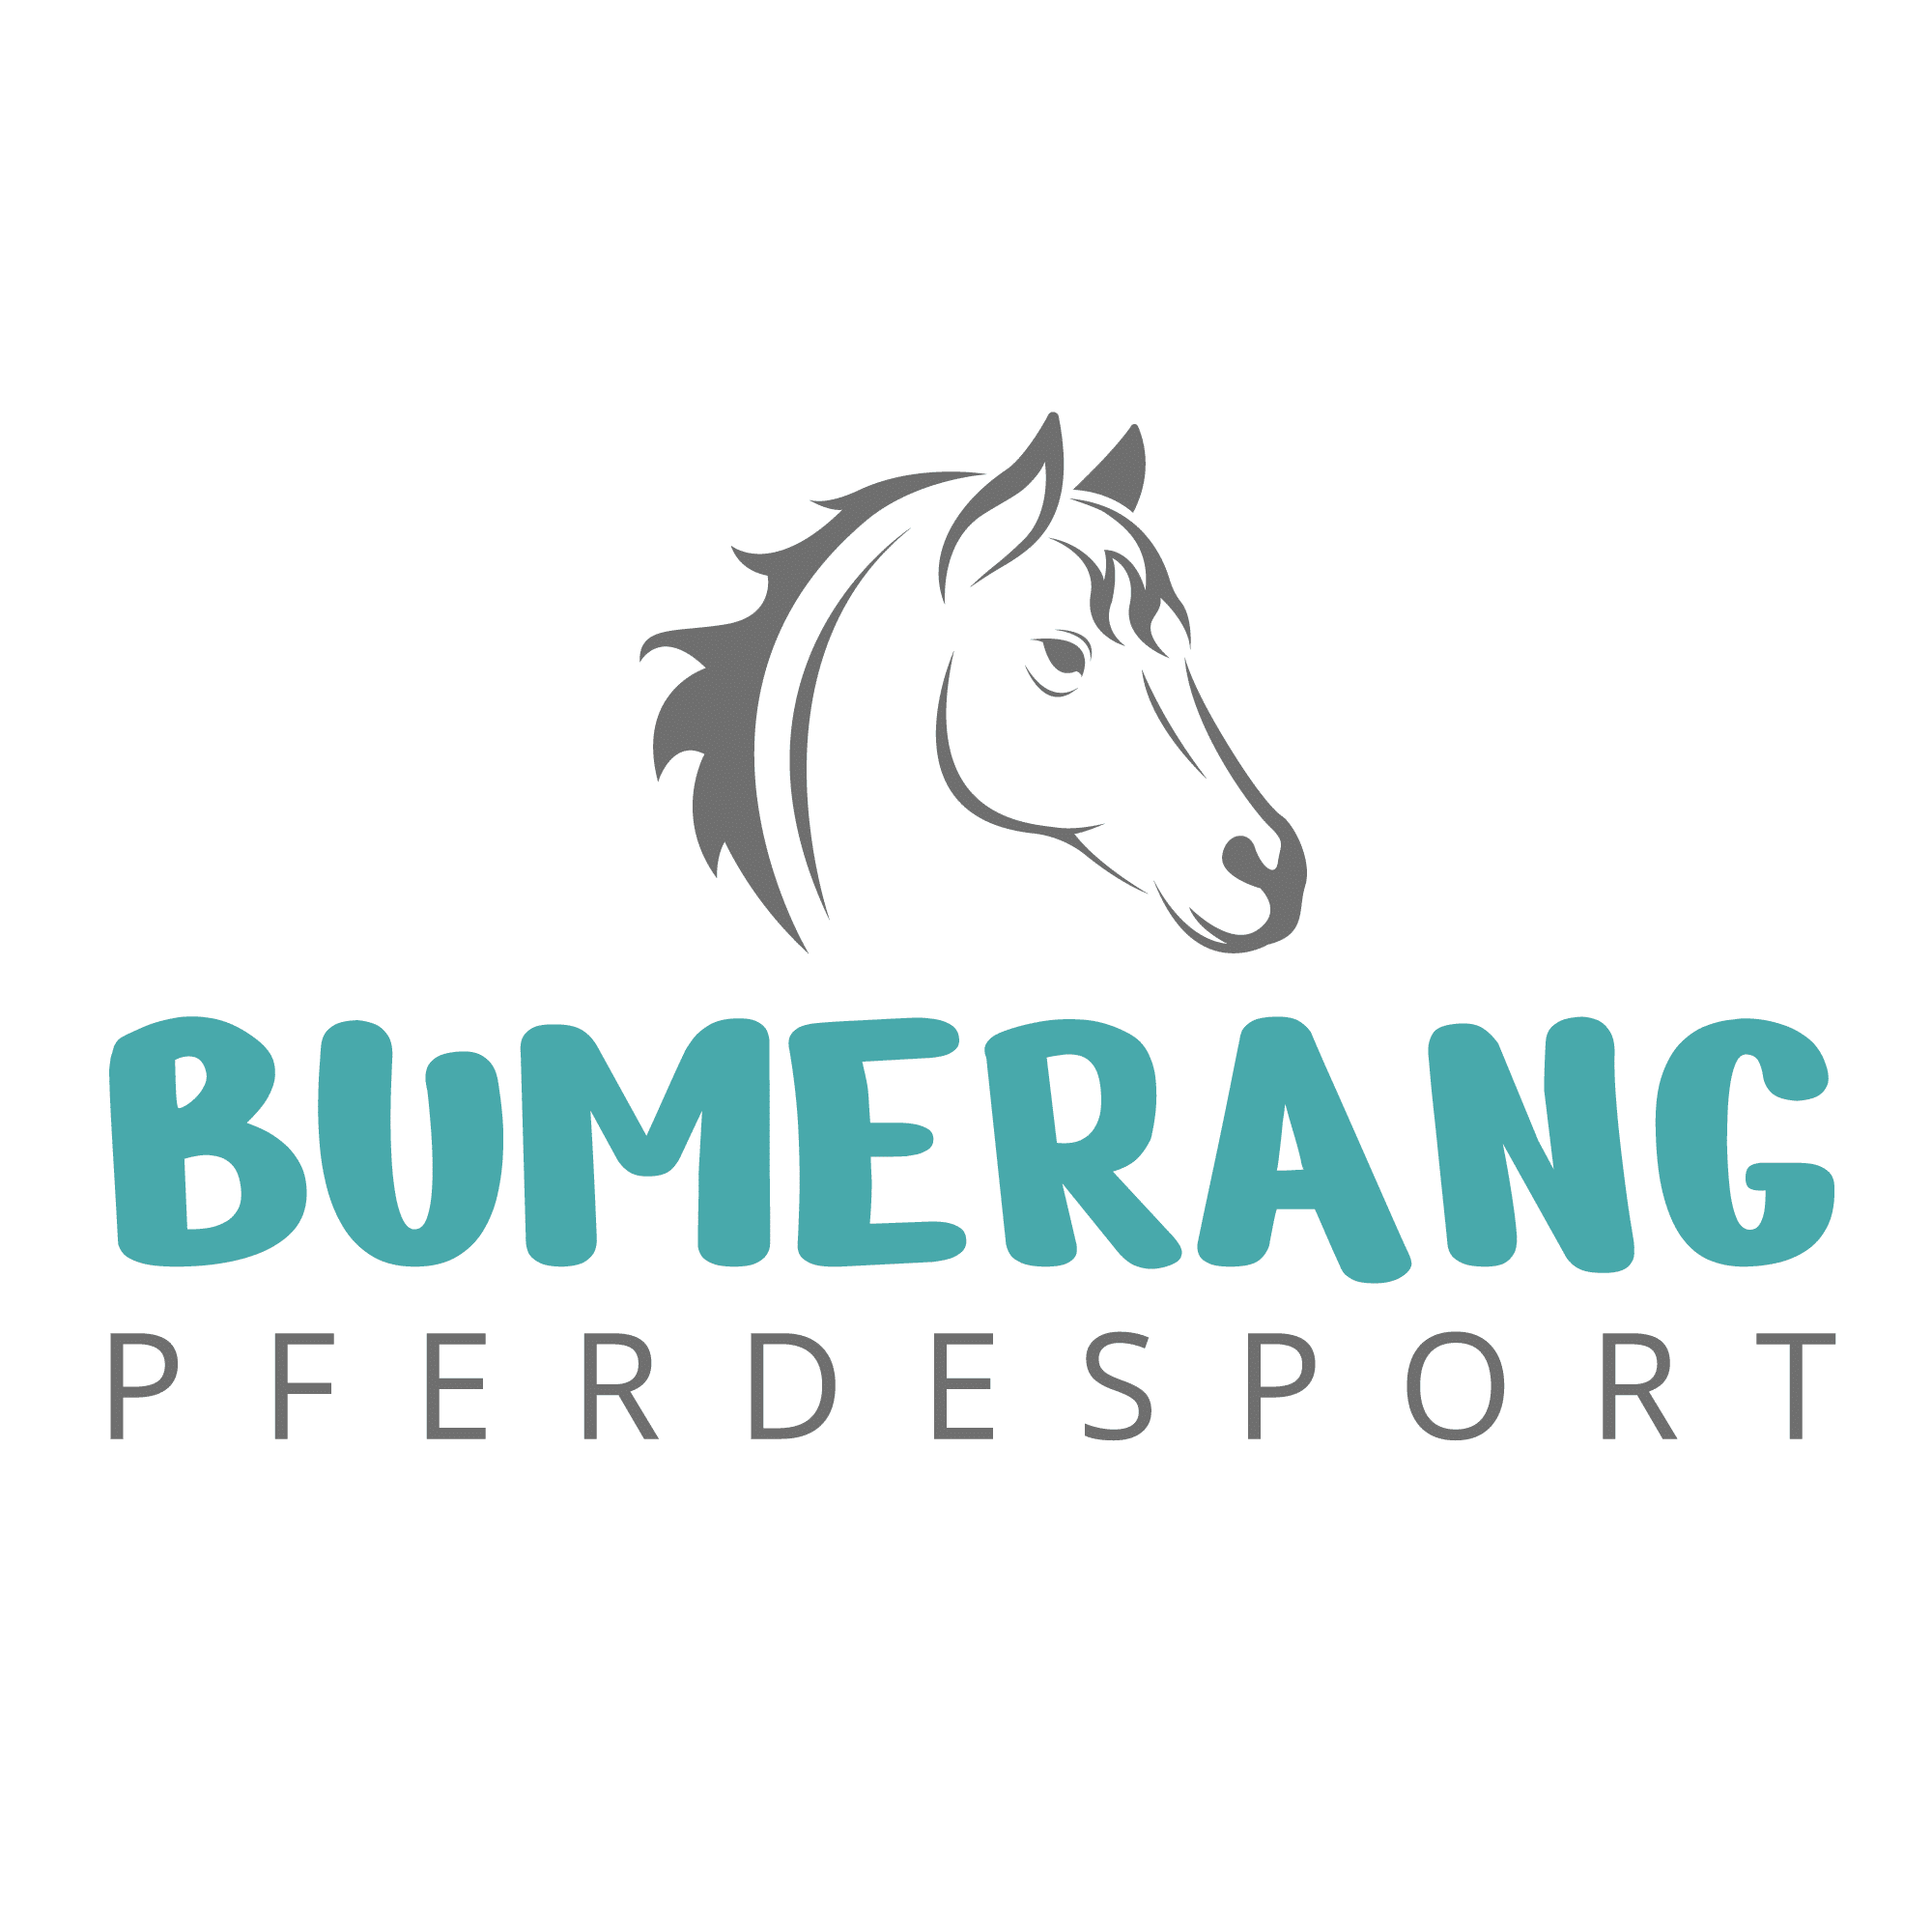 (c) Bumerang-pferdesport.de